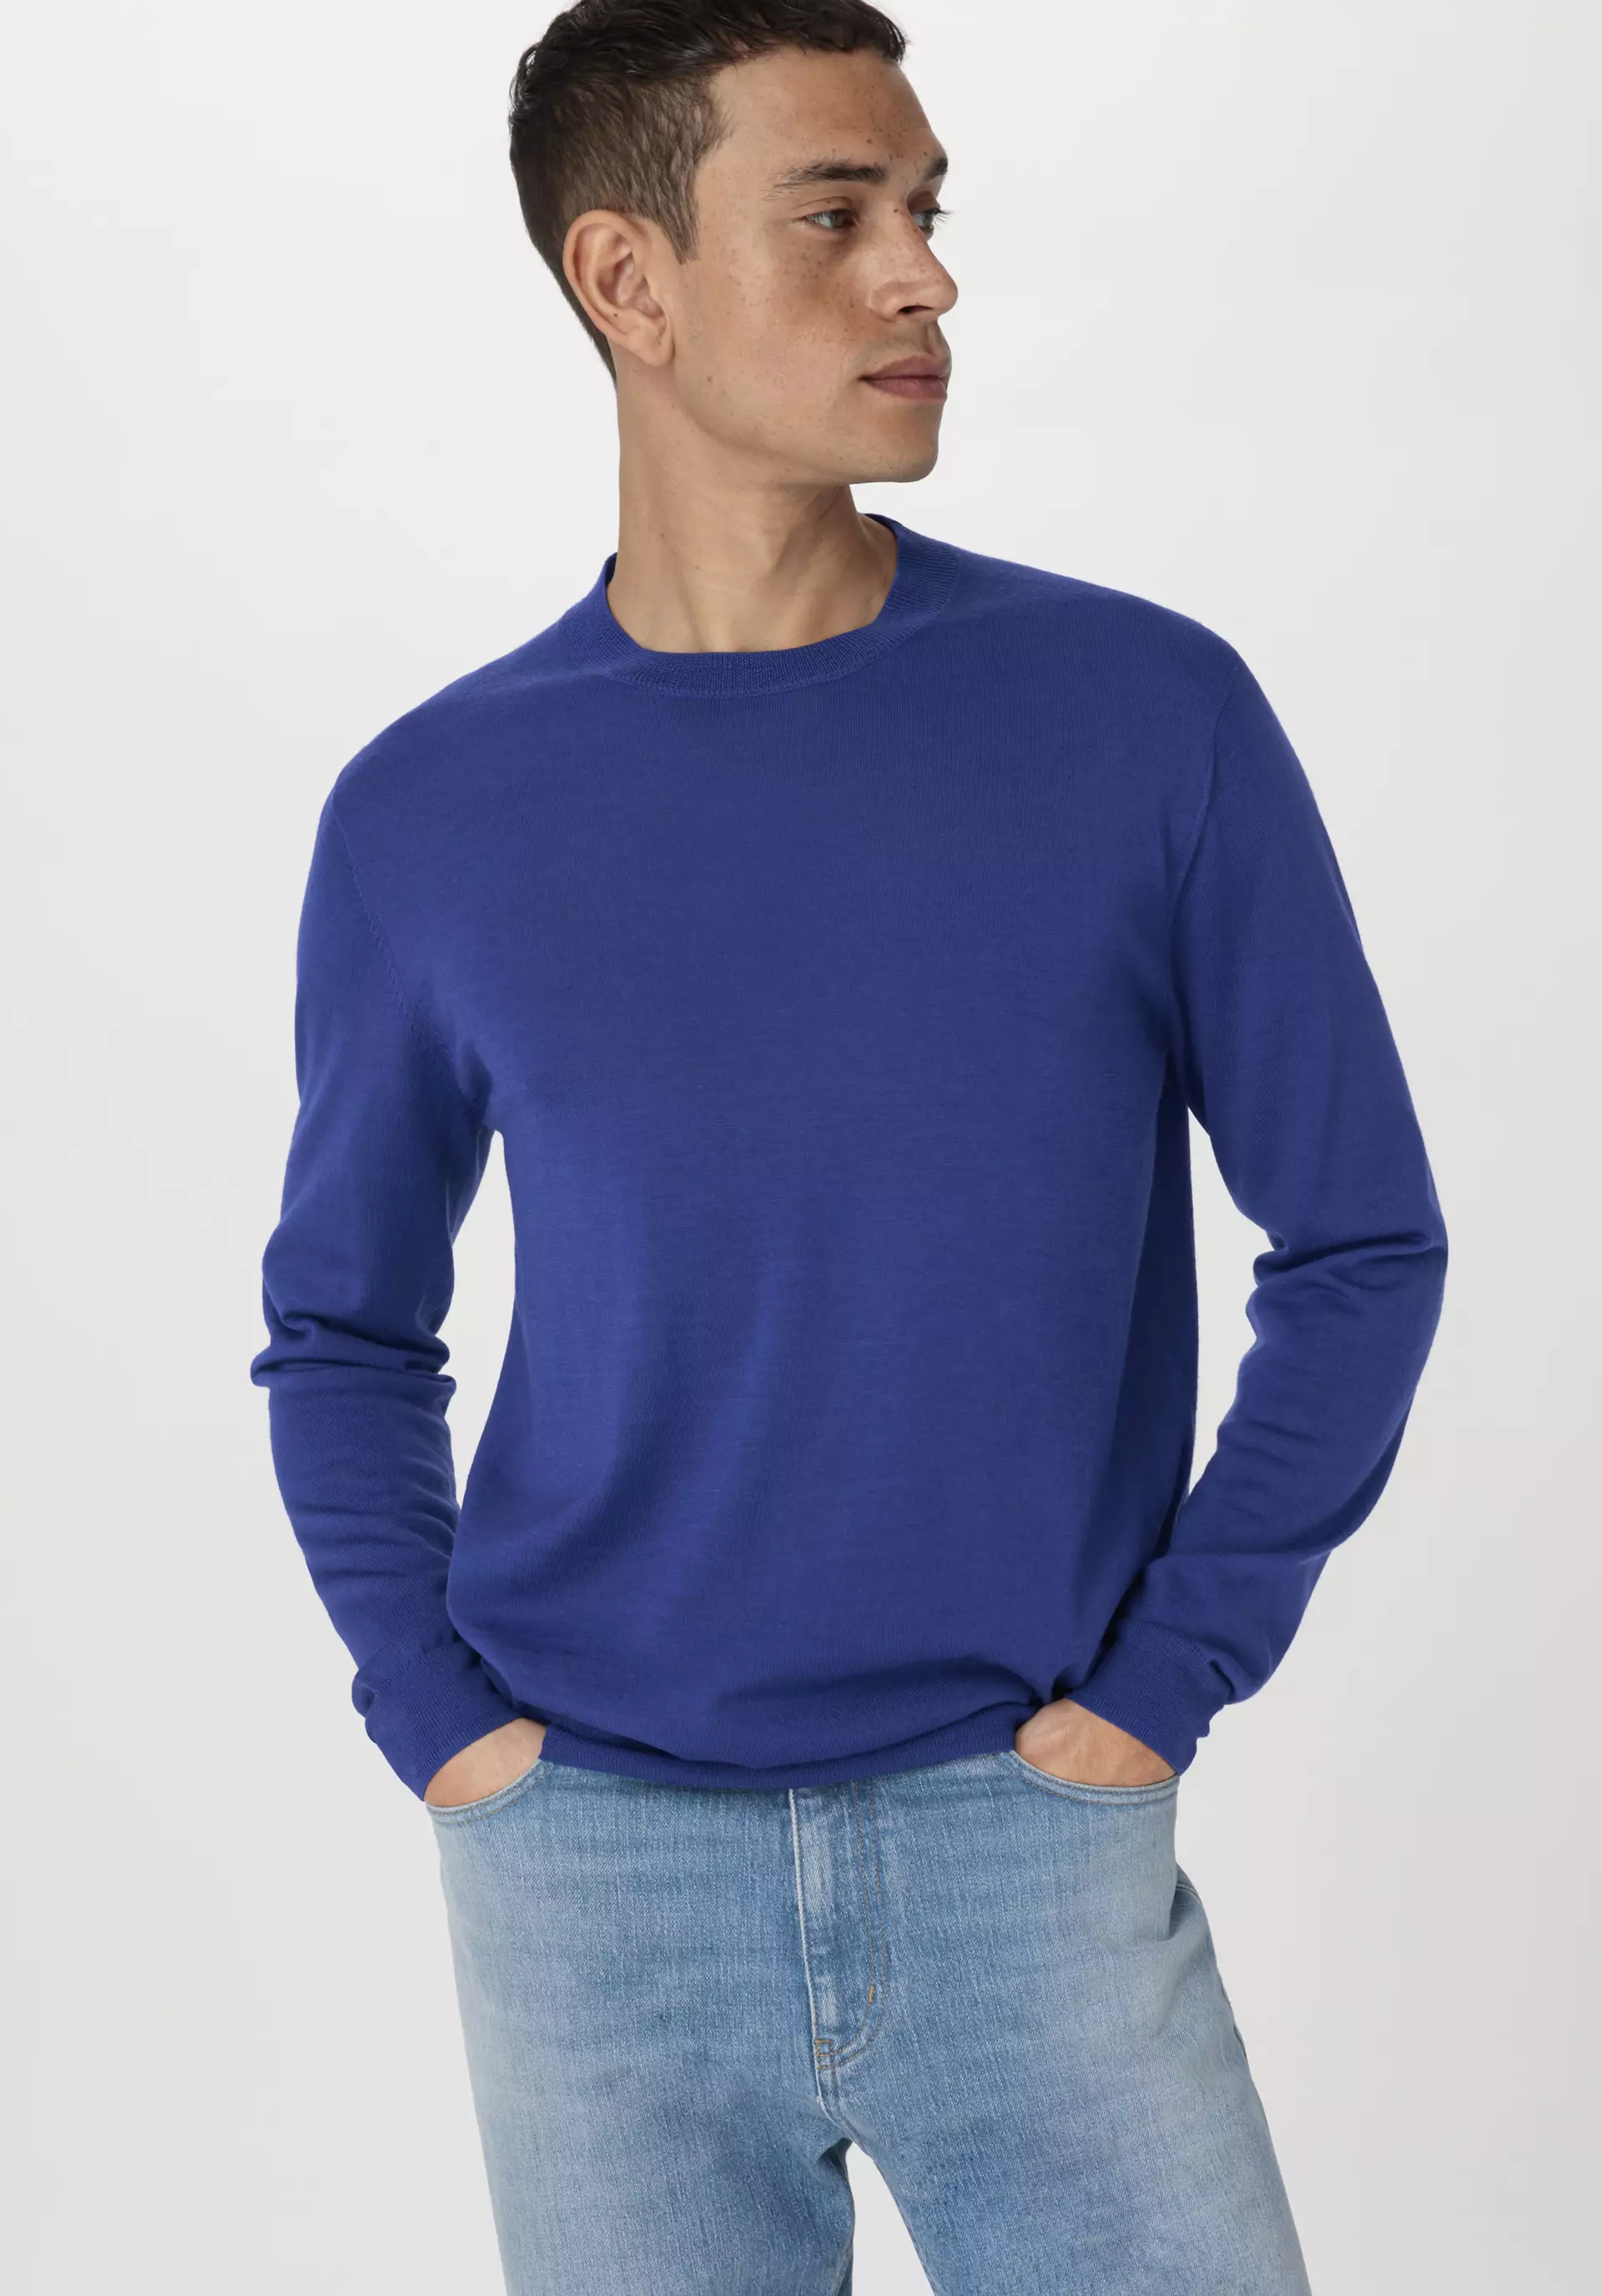 Fine regular sweater made from pure organic merino wool - 2